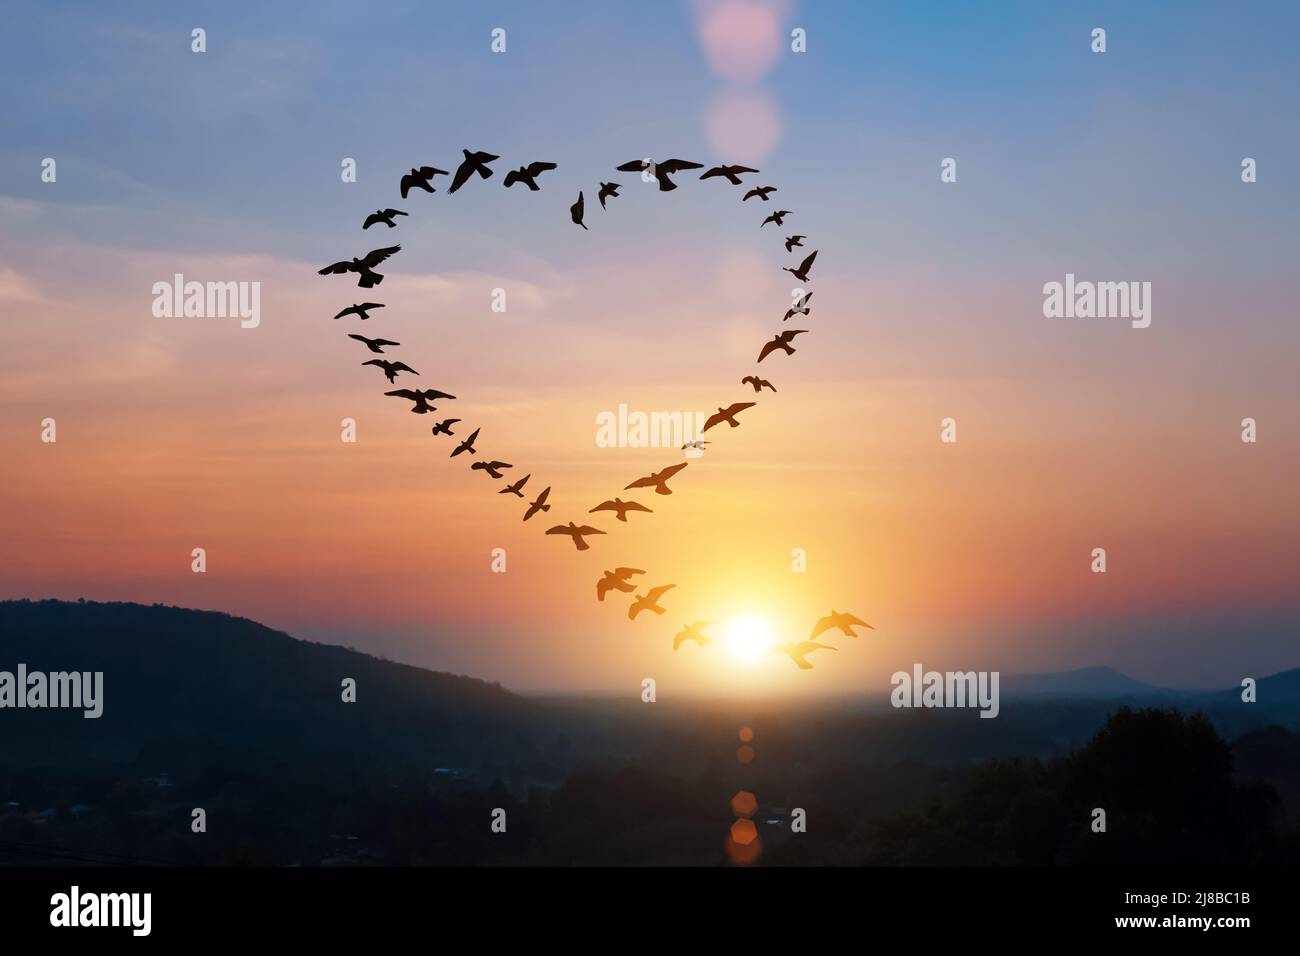 Silhouette von fliegenden Scharen Vögel in Form Herz über Sonnenuntergang Himmel. Stockfoto